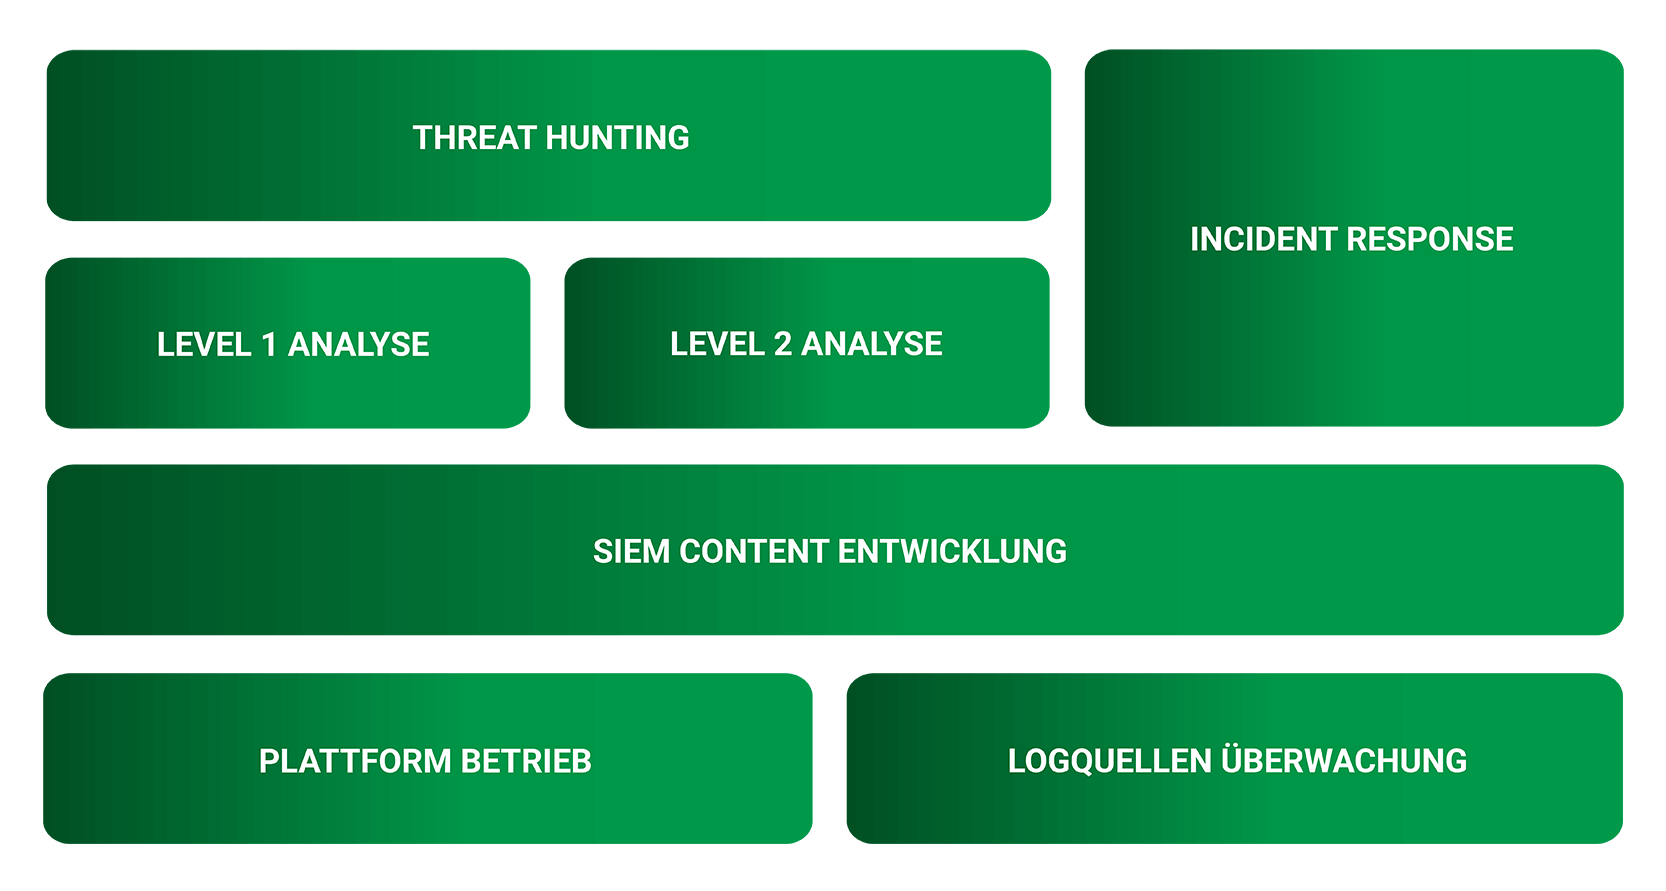 Eine Übersicht der verschiedenen Rollen im SIEM Betrieb. Threat Hunting & Incident Response, Level 1 & Level 2 Analyse, SIEM Content Entwicklung und Platform Betrieb sowie Logquellen Überwachung. Alle Bereiche sind grün dargesellt, die Farbe der Menüführung für SIEM Consulting.